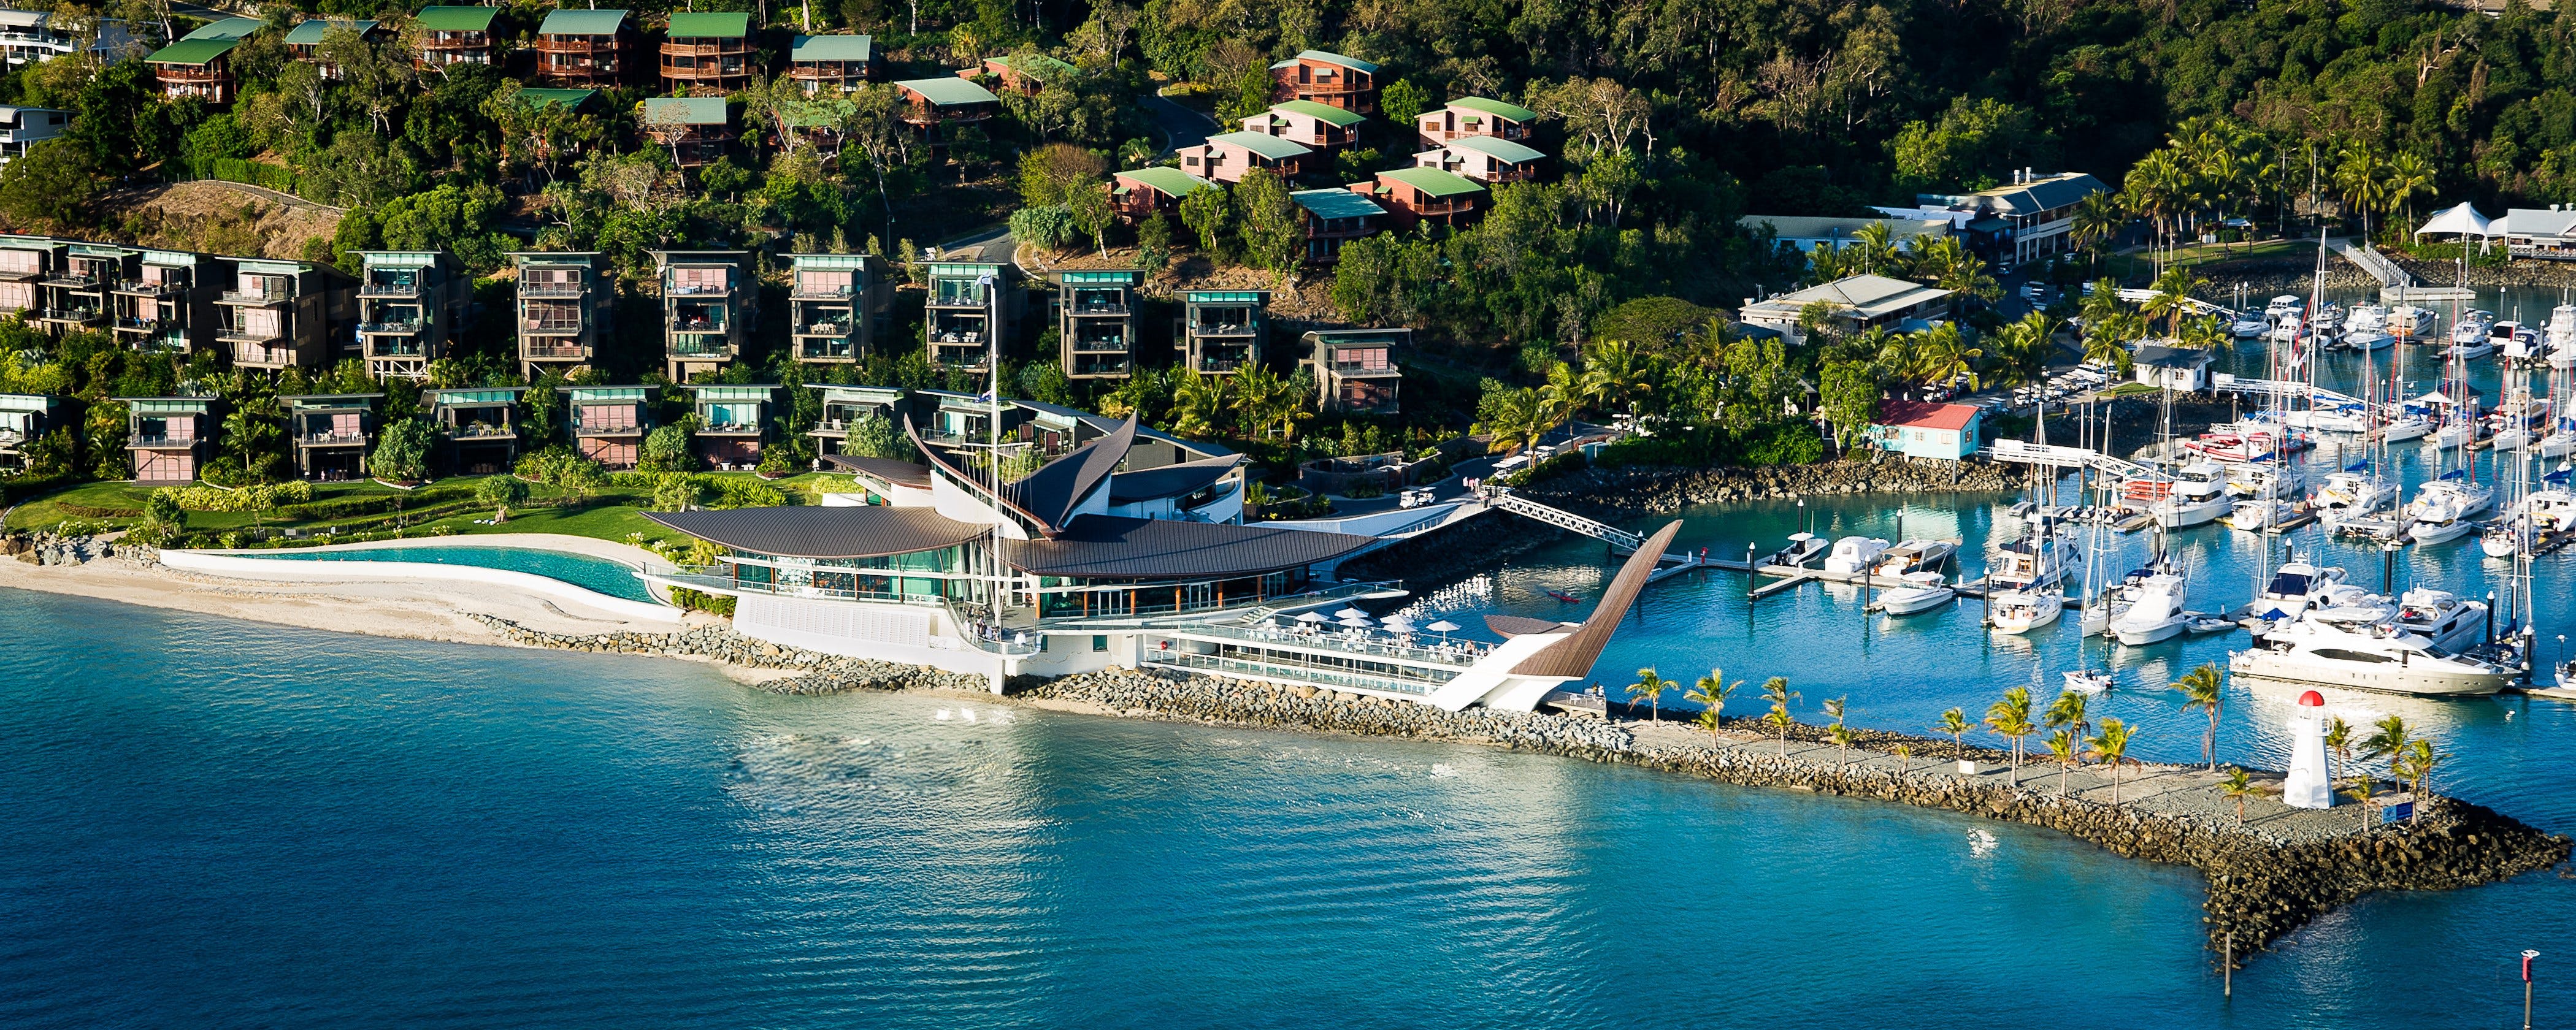 Hamilton Island Yacht Club - Carnarvon Accommodation